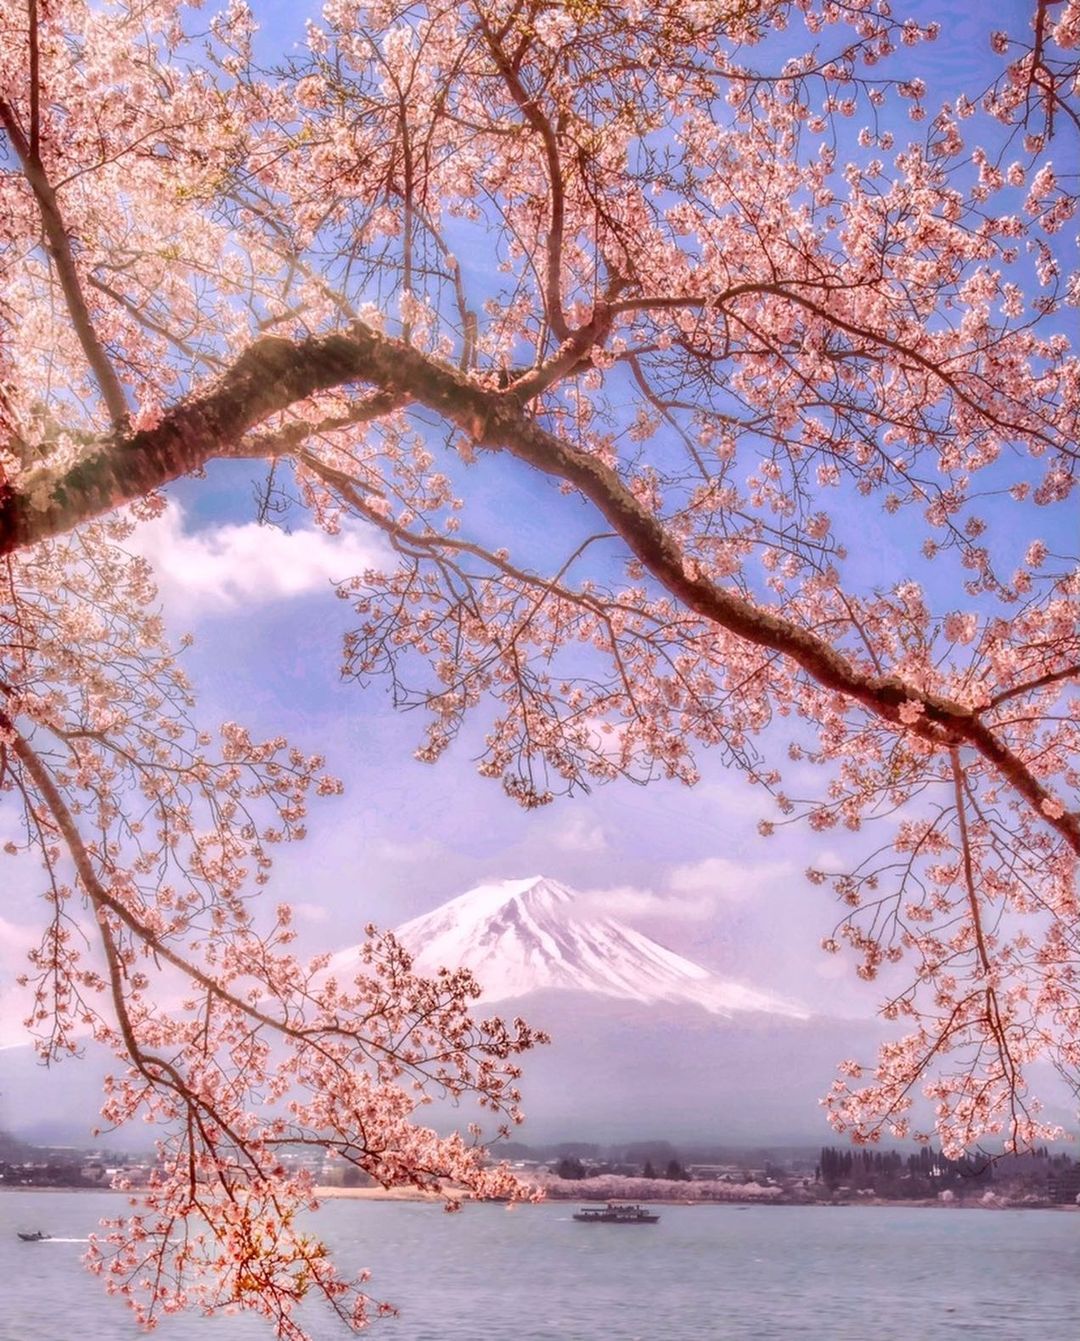 Волшебная японская природа на снимках Макико Самедзимы Макико, Самедзима, Читать, подписчиков, более, Instagram, делится, работами, Своими, ландшафты, природные, яркие, самые, запечатлеть, чтобы, Японии, фотографии, путешествует, природной, пейзажной